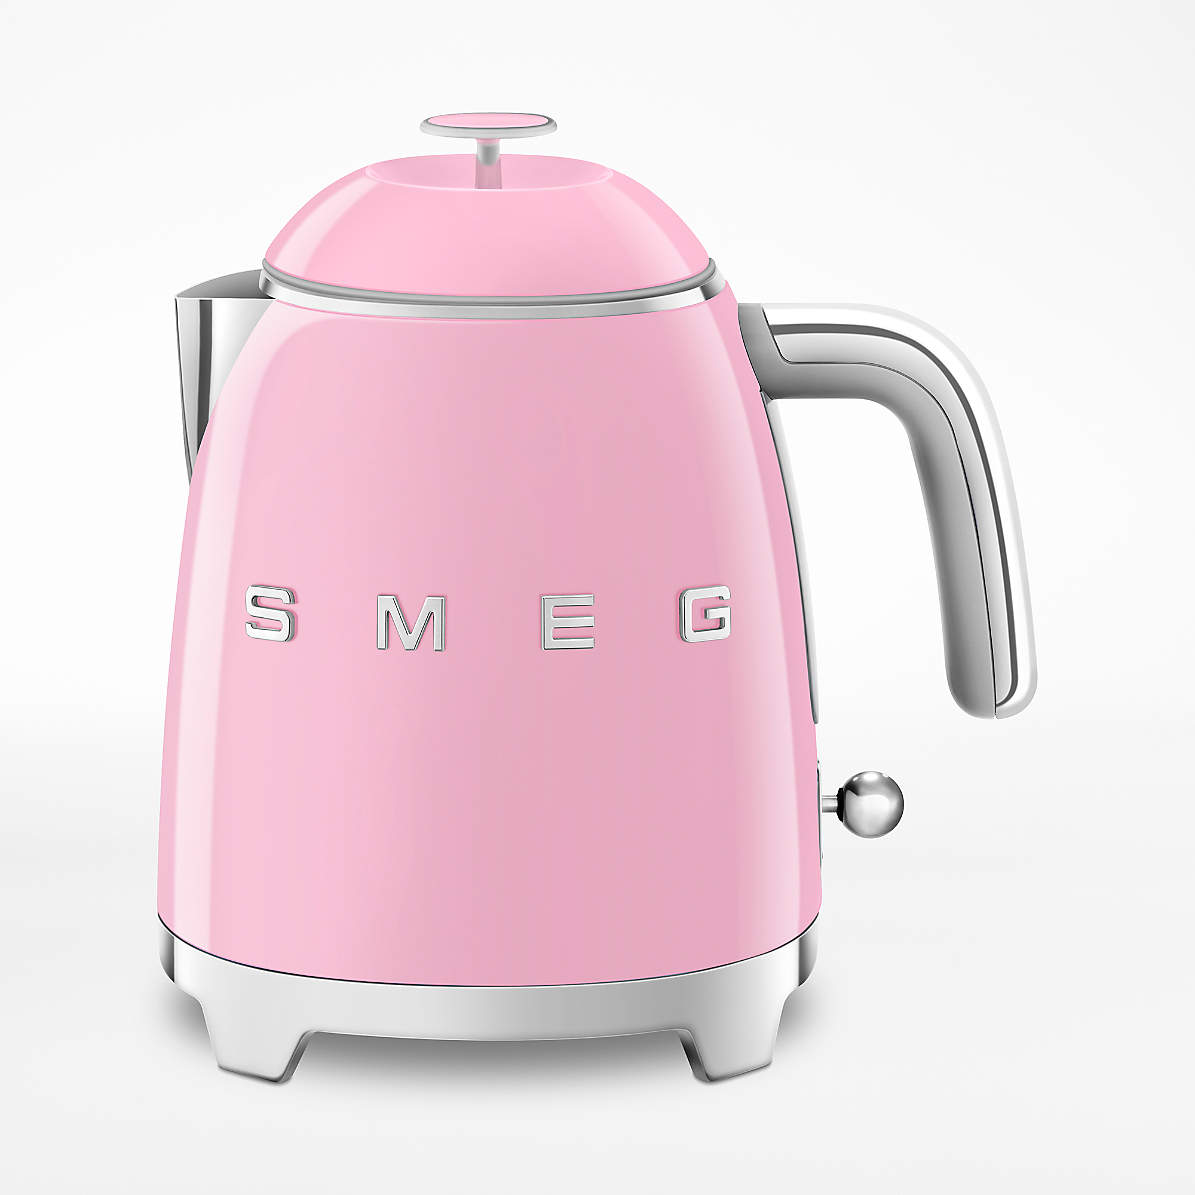 matrix jeg er enig forskel Smeg Pink Mini Electric Tea Kettle + Reviews | Crate & Barrel